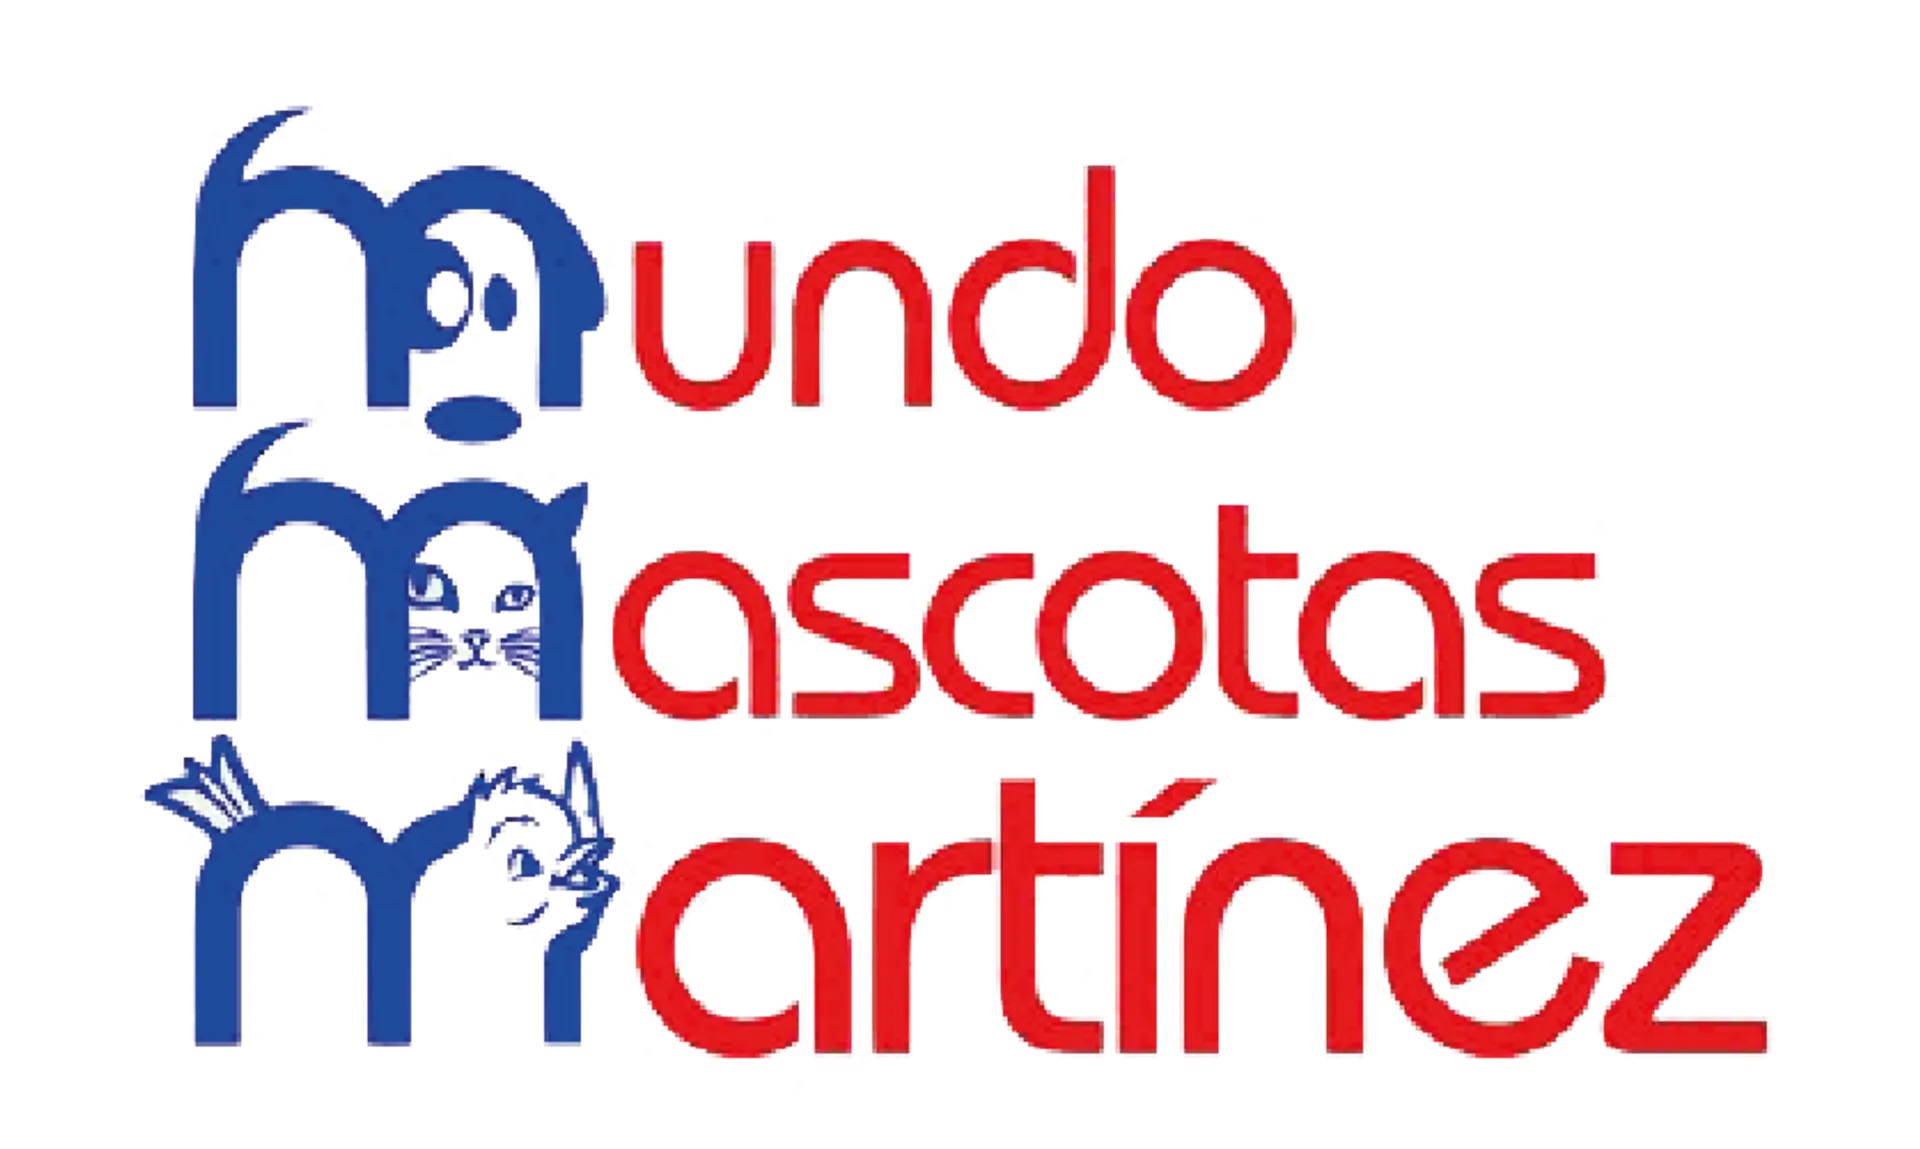 MUNDO MASCOTAS MARTÍNEZ logo